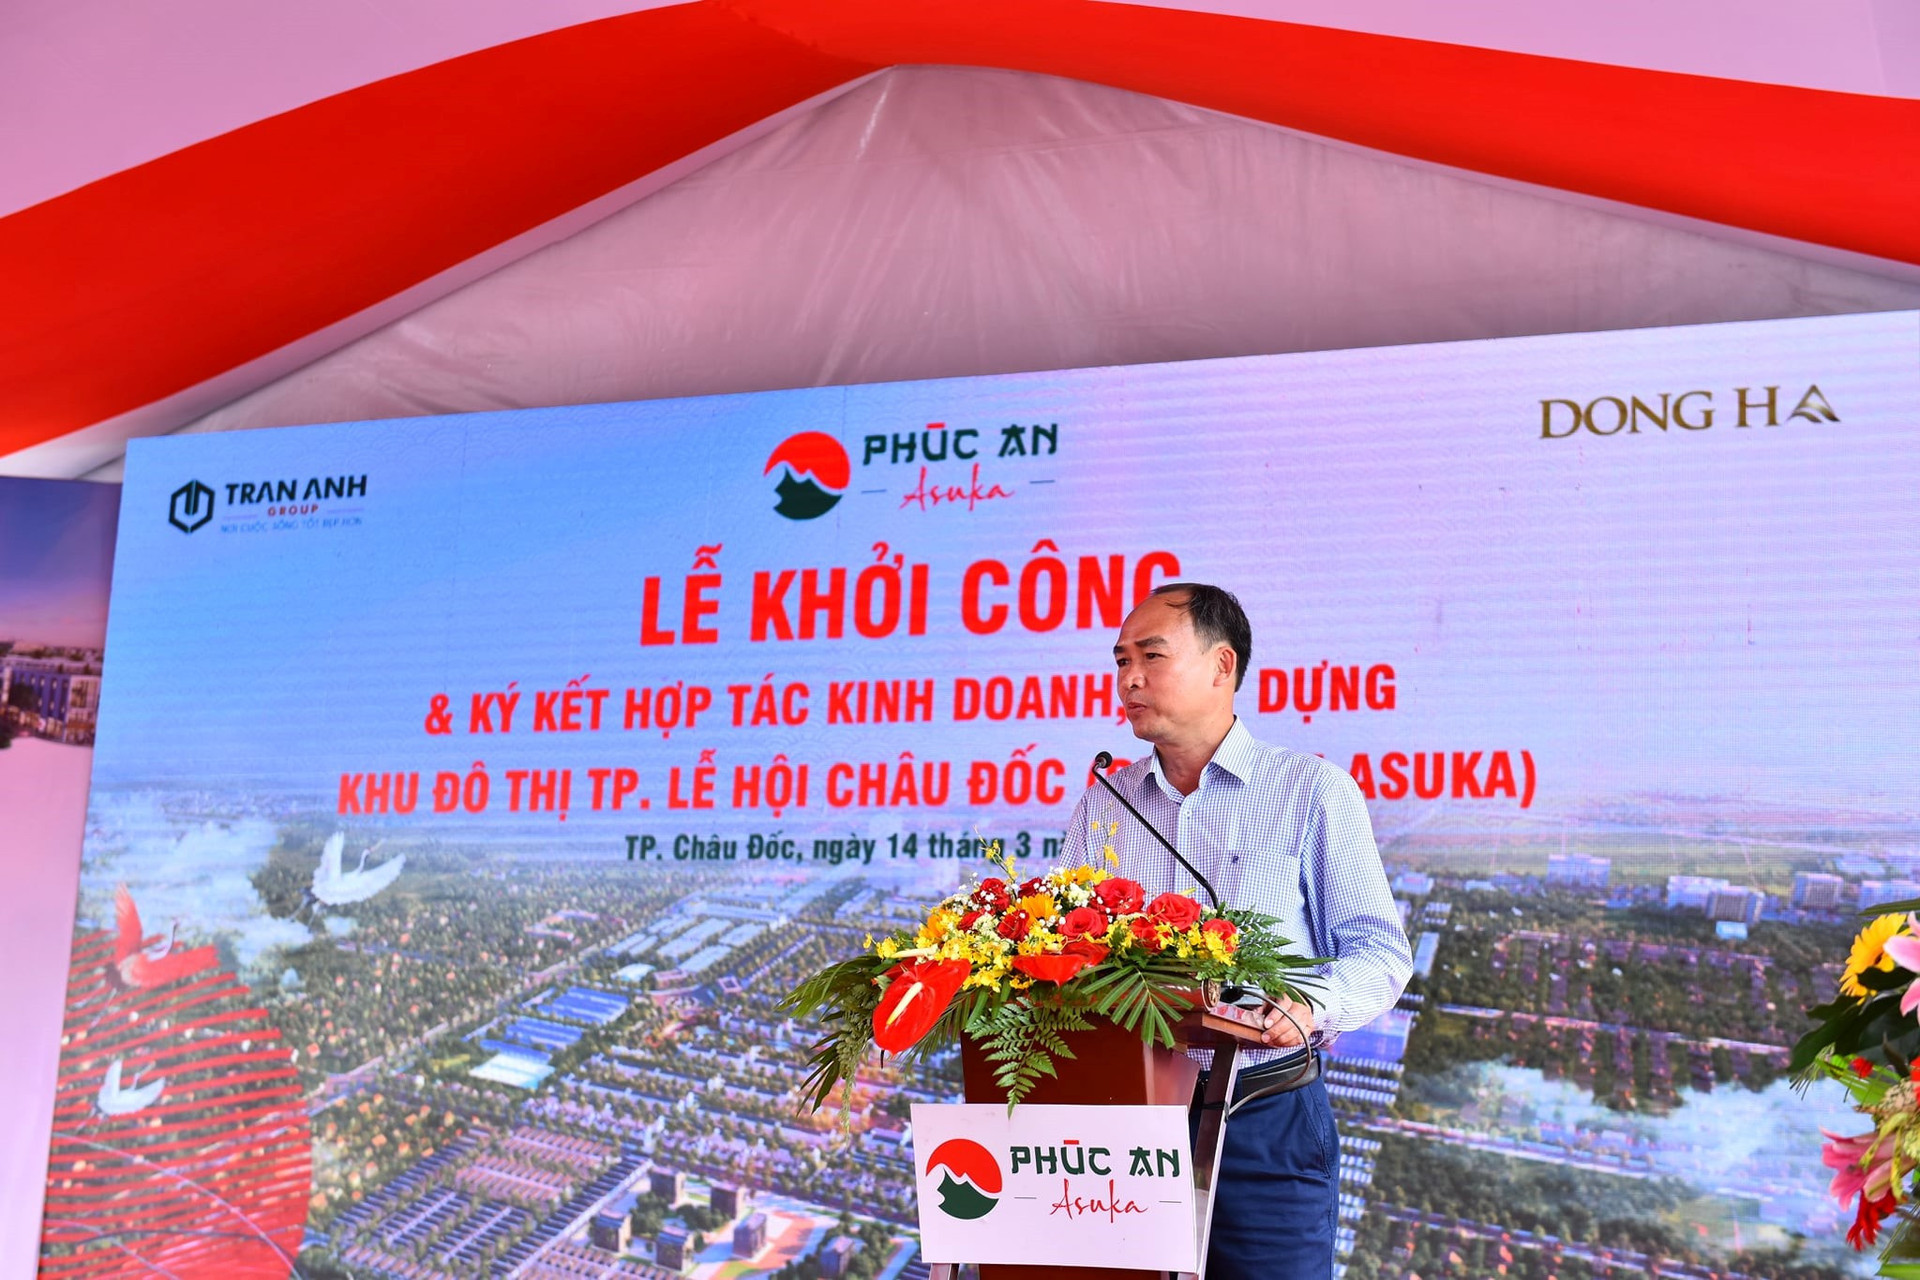 Ông Lâm Quang Thi - Bí thư Thành ủy, Chủ tịch UBND TP. Châu Đốc phát biểu tại lễ khởi công